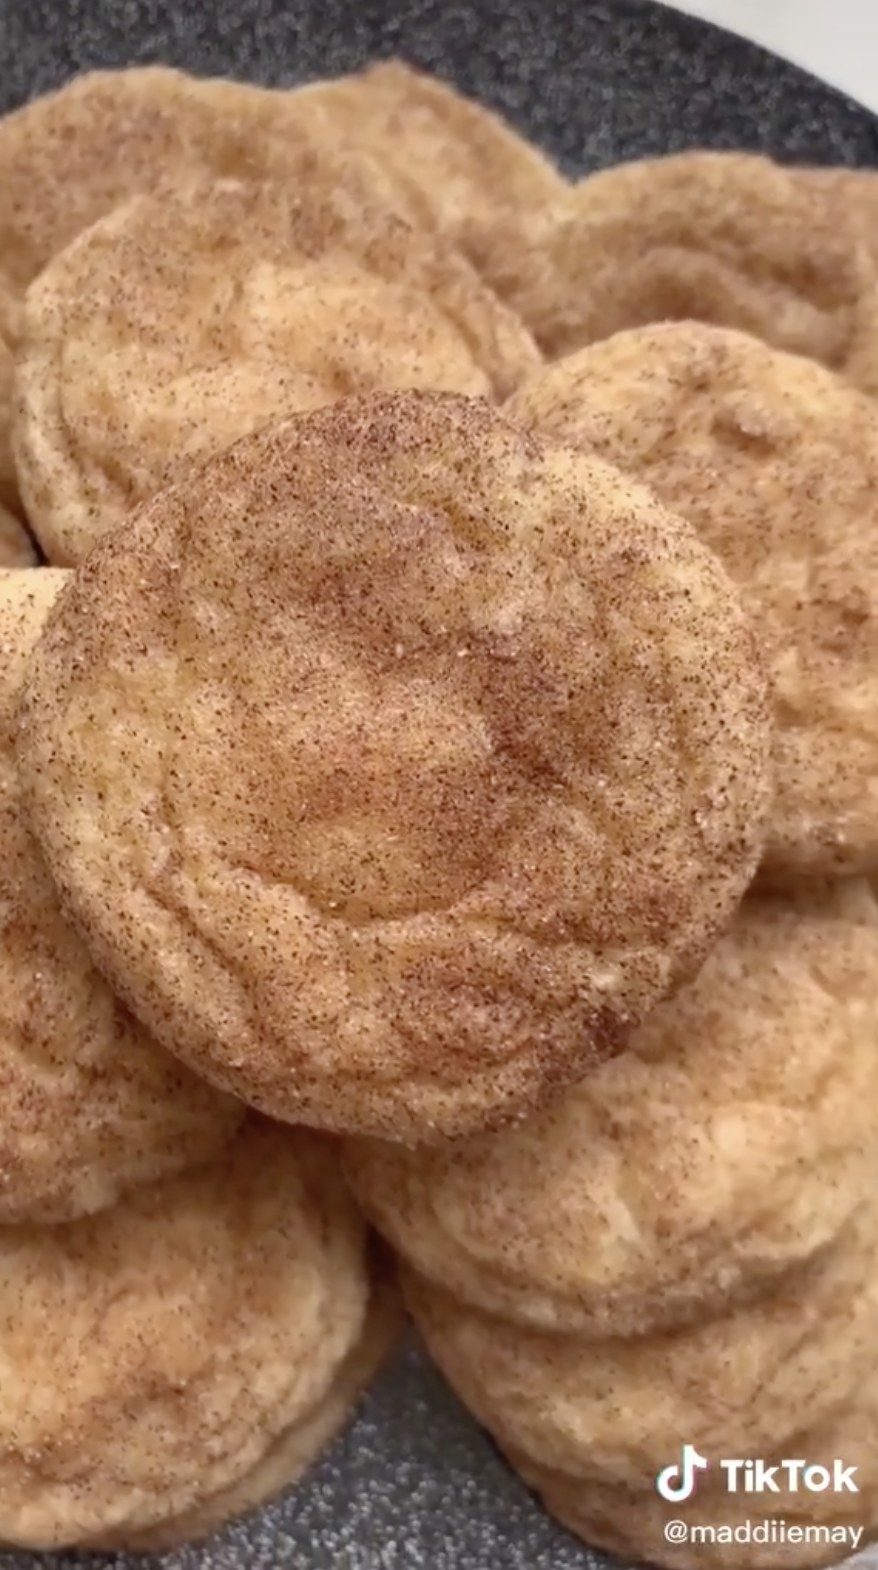 Cookies with cinnamon sprinkled on top